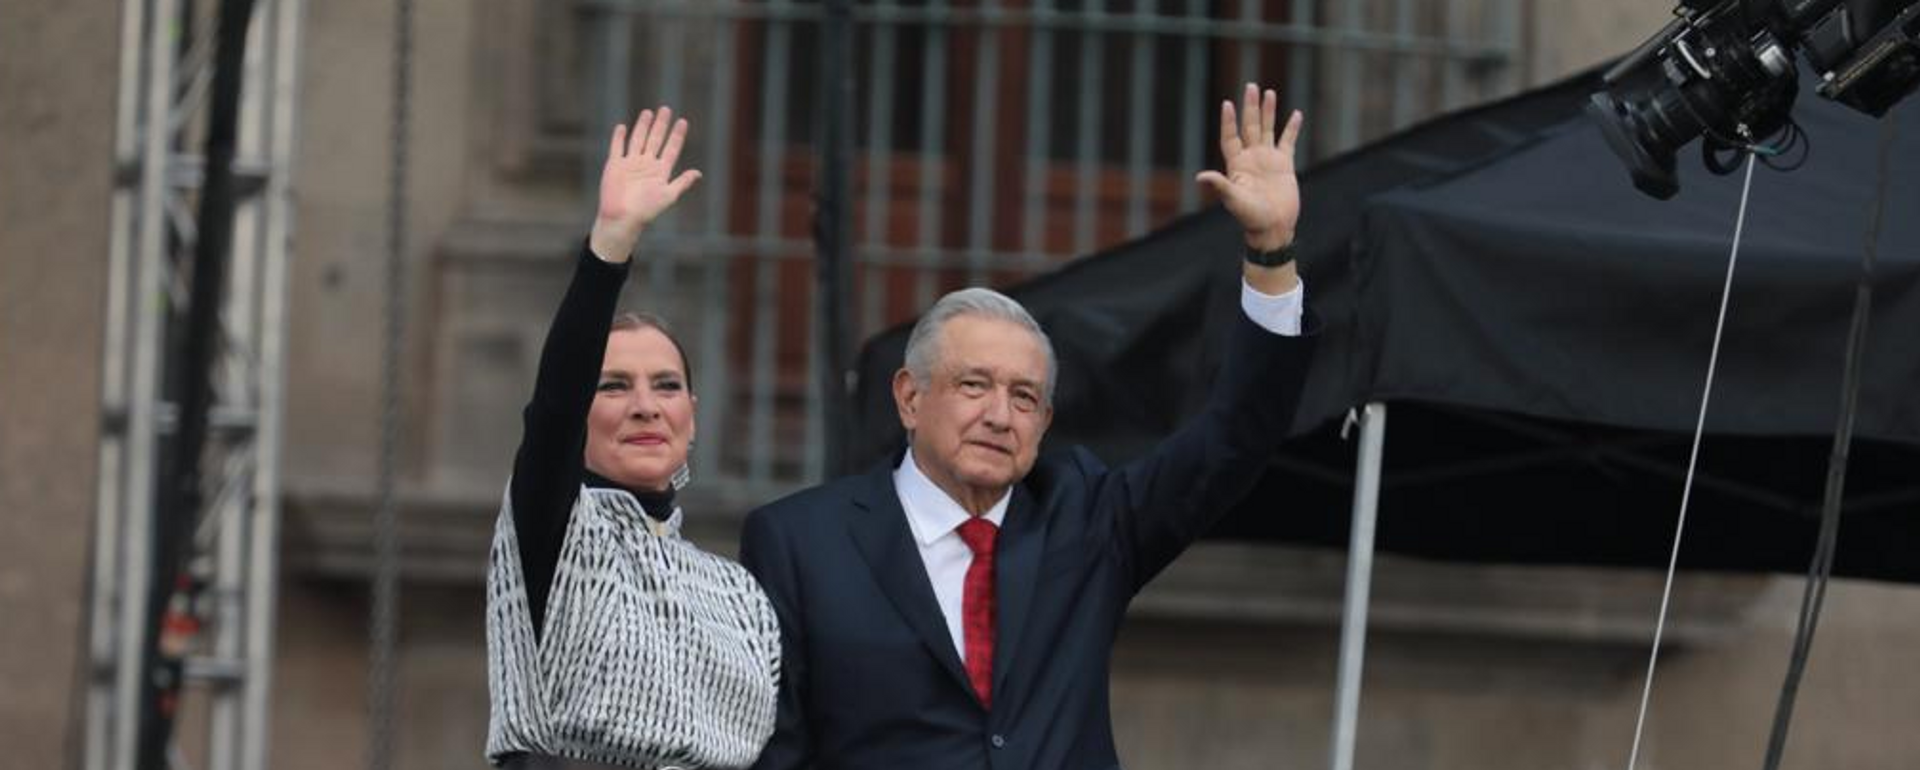 El presidente de México, Andrés Manuel López Obrador, con su esposa, Beatriz Gutiérrez Müller, durante su dicurso a la nación con motivo de tres años de su gobierno - Sputnik Mundo, 1920, 02.12.2021